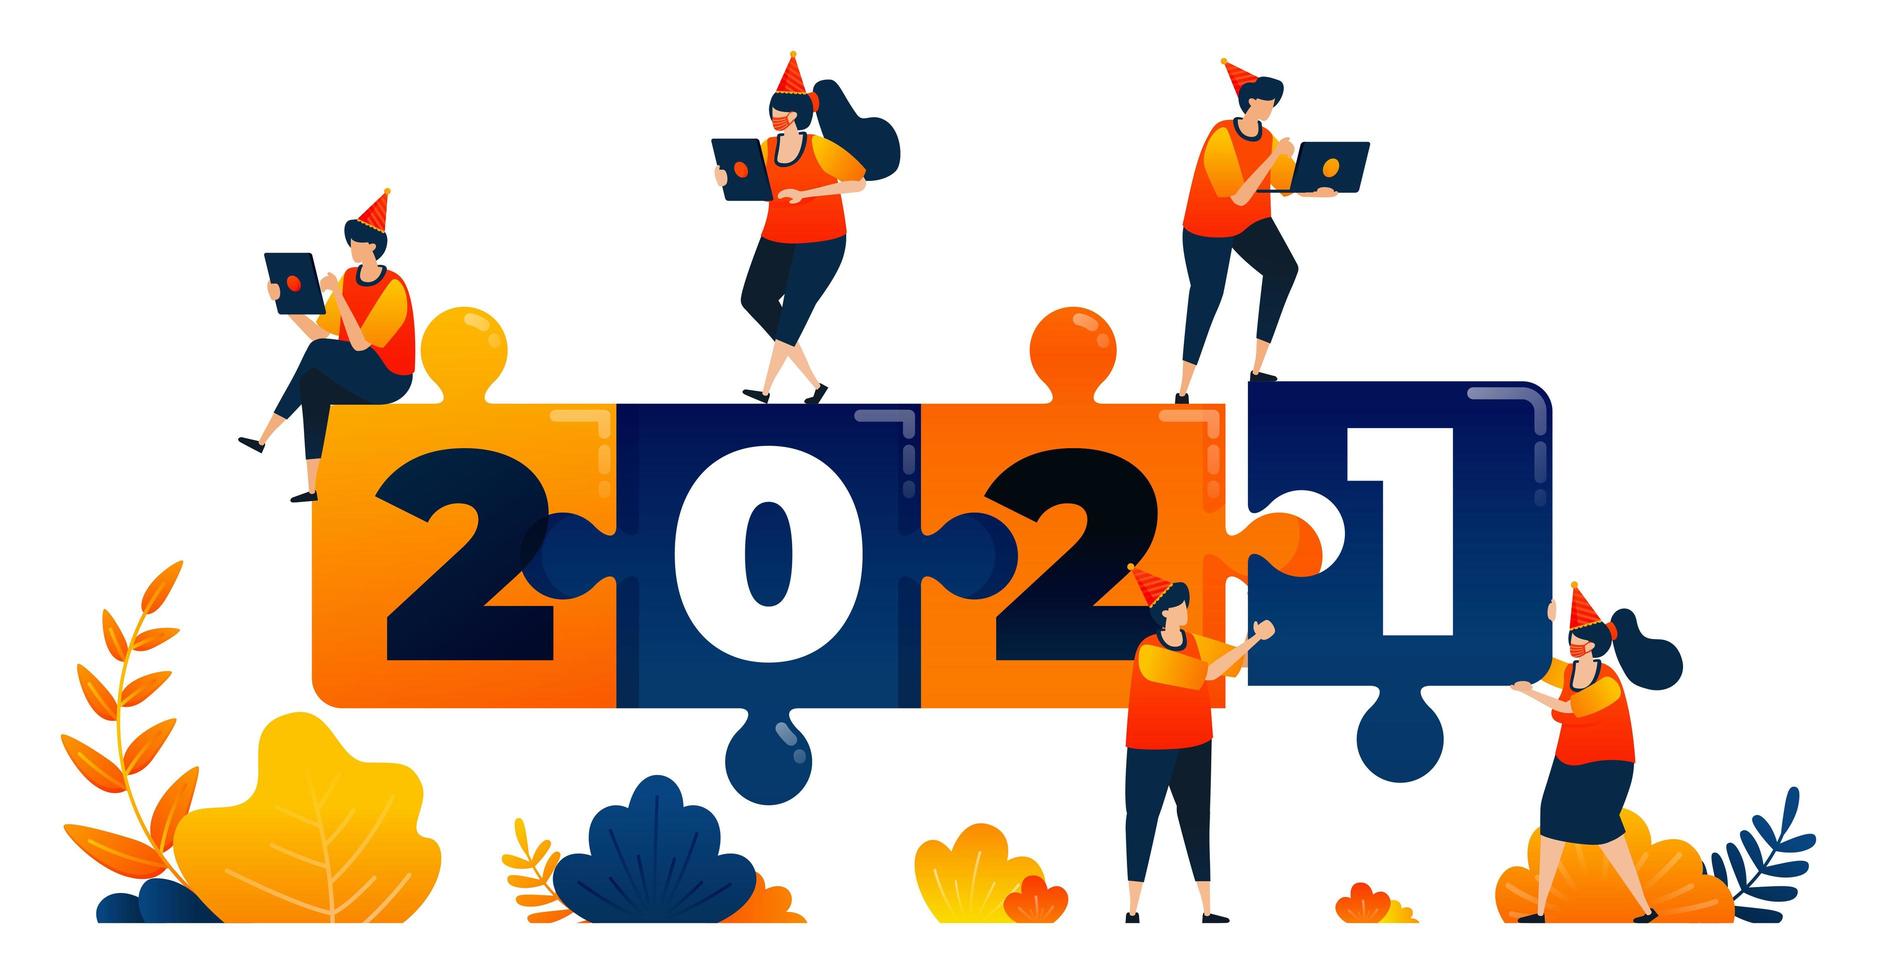 nouvelles années de 2020 à 2021 avec le thème du jeu de puzzle, du leadership et du travail d'équipe. le concept d'illustration vectorielle peut être utilisé pour la page de destination, le modèle, l'interface utilisateur, le web, l'application mobile, l'affiche, la bannière, le site Web, le dépliant vecteur